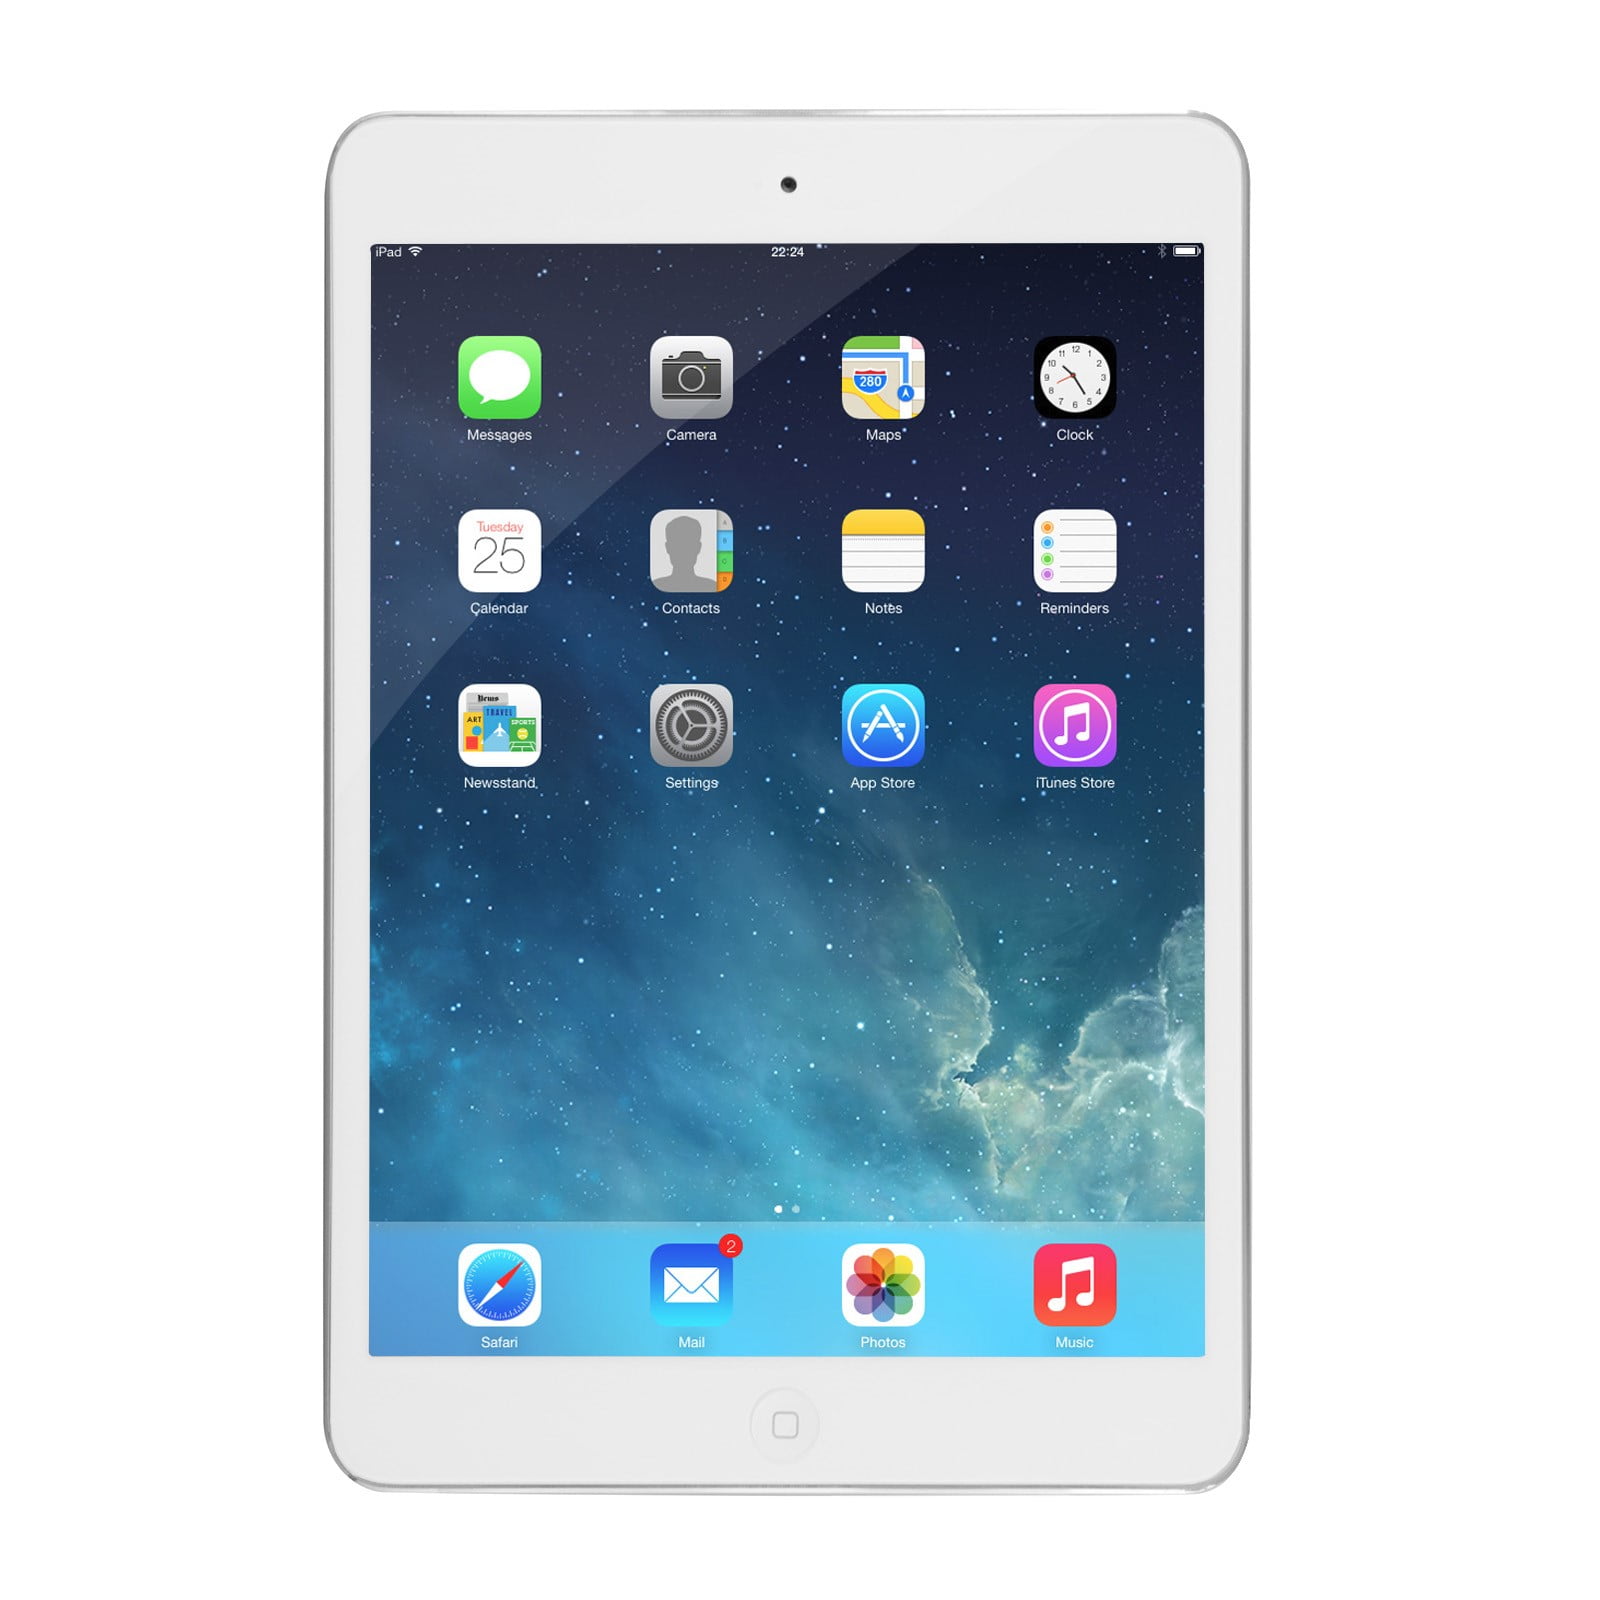 Apple iPad 3rd Gen 32GB White - (MD328LL/A) Refurbished - Walmart.com